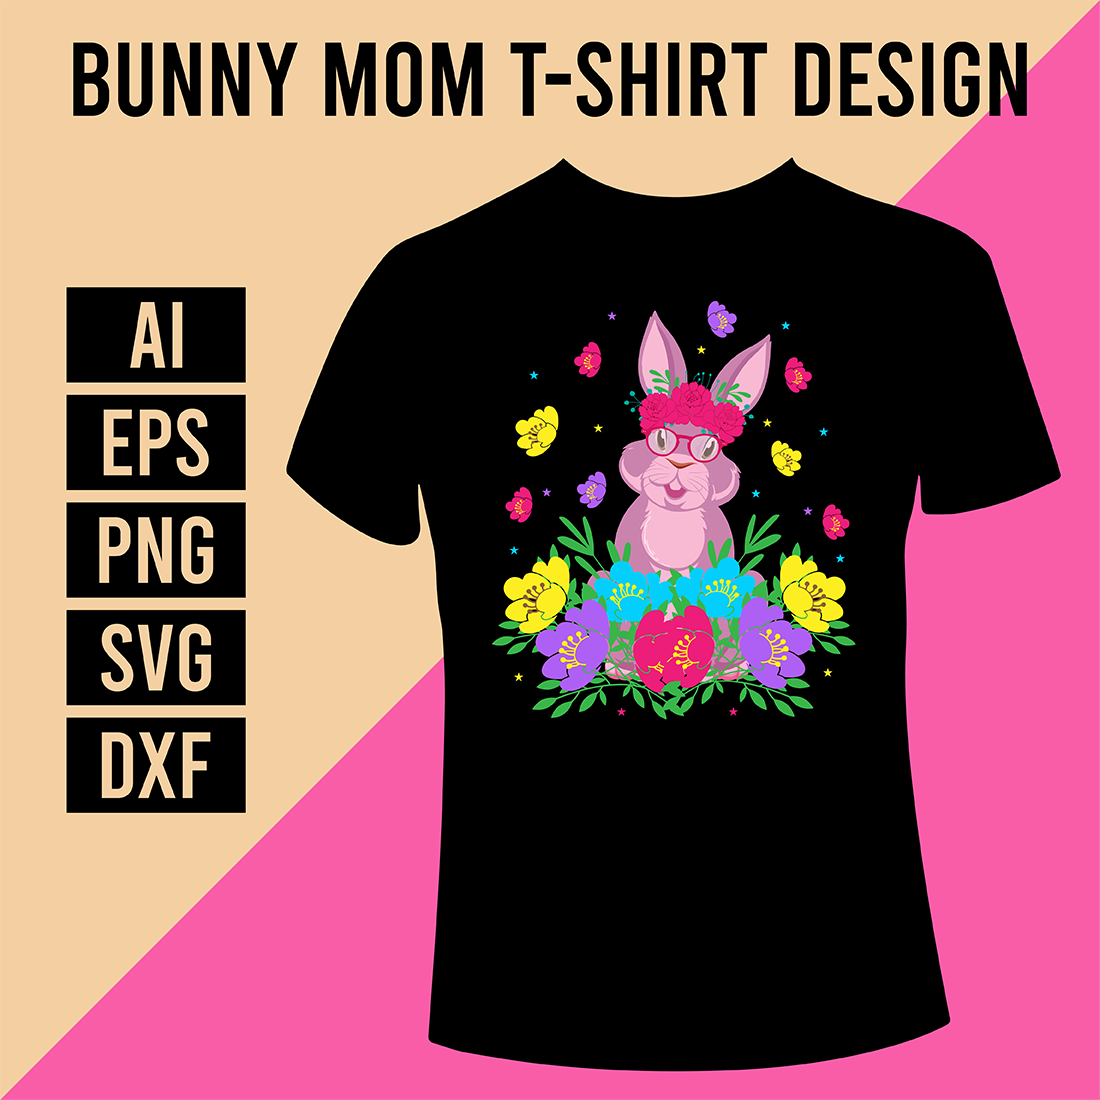 Bunny Mom T-Shirt Design cover image.